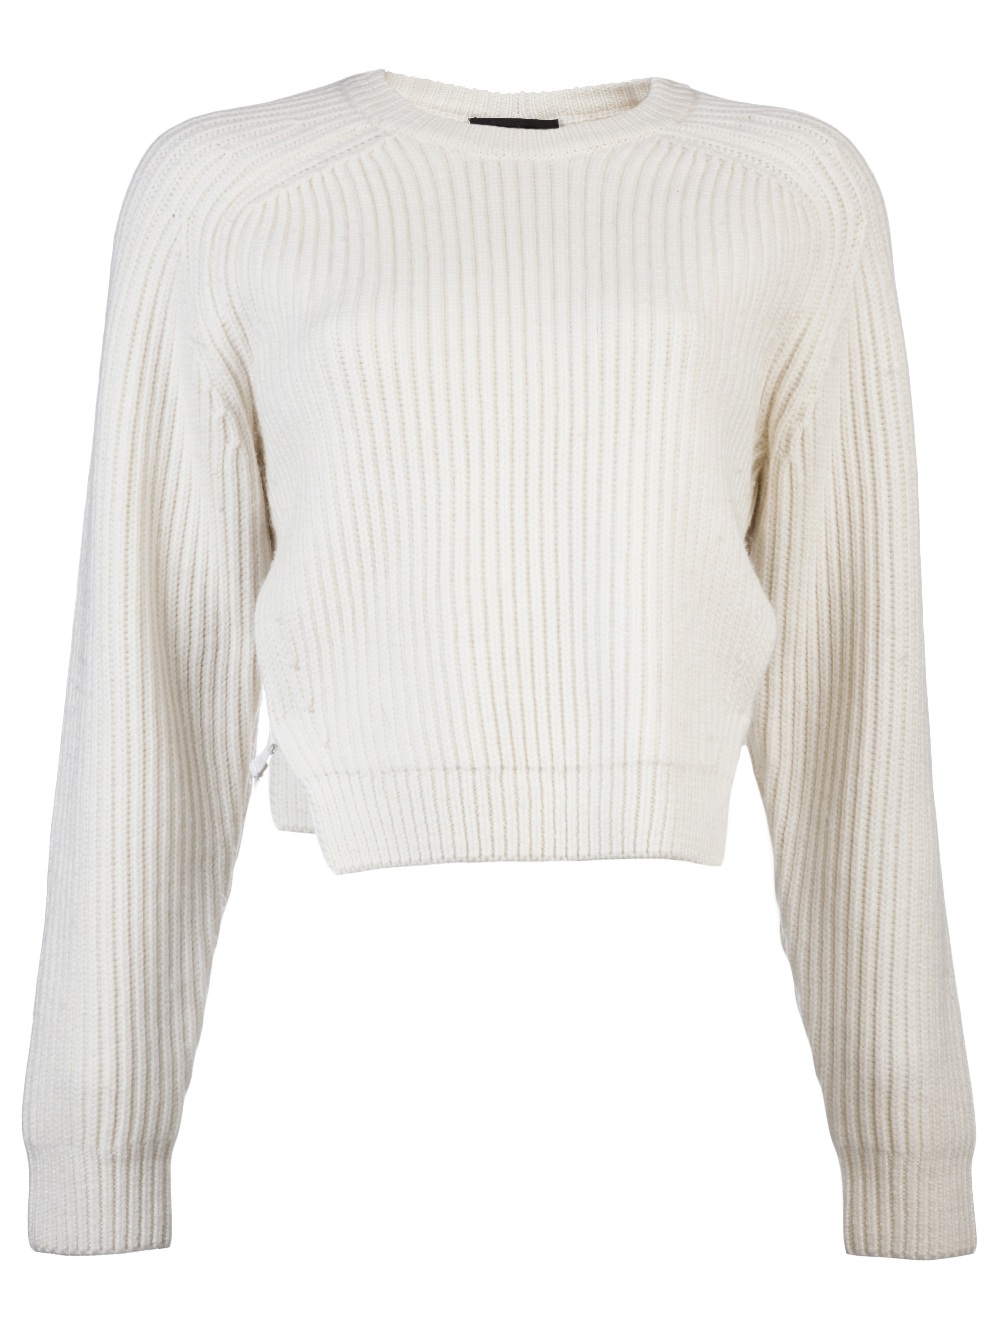 Alexander Wang Open Side Sweater in White | Lyst